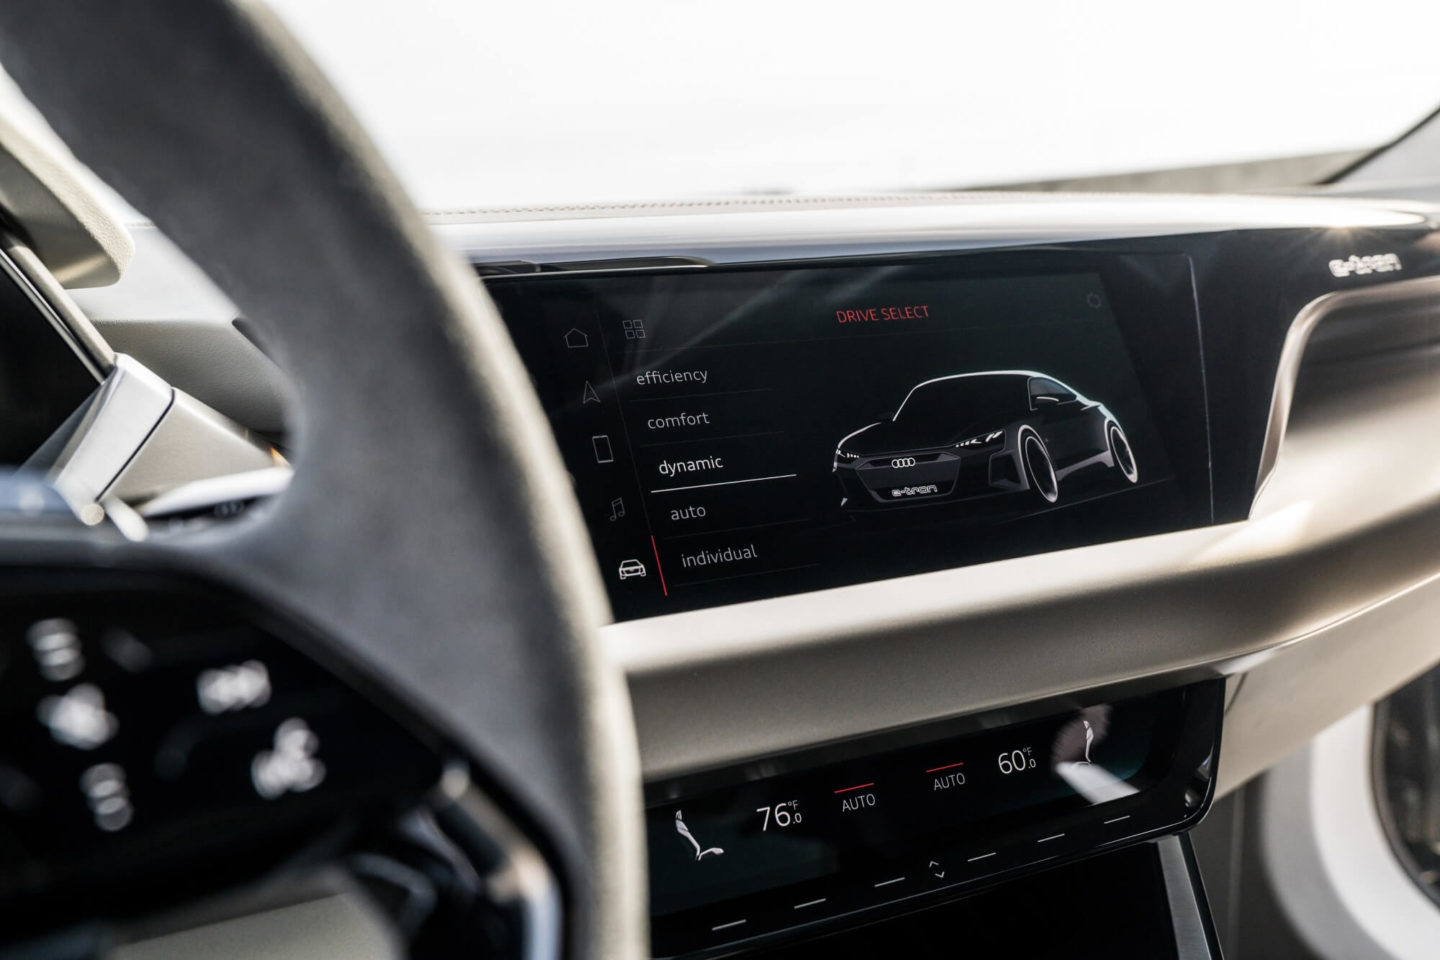 Audi e-tron GT concept